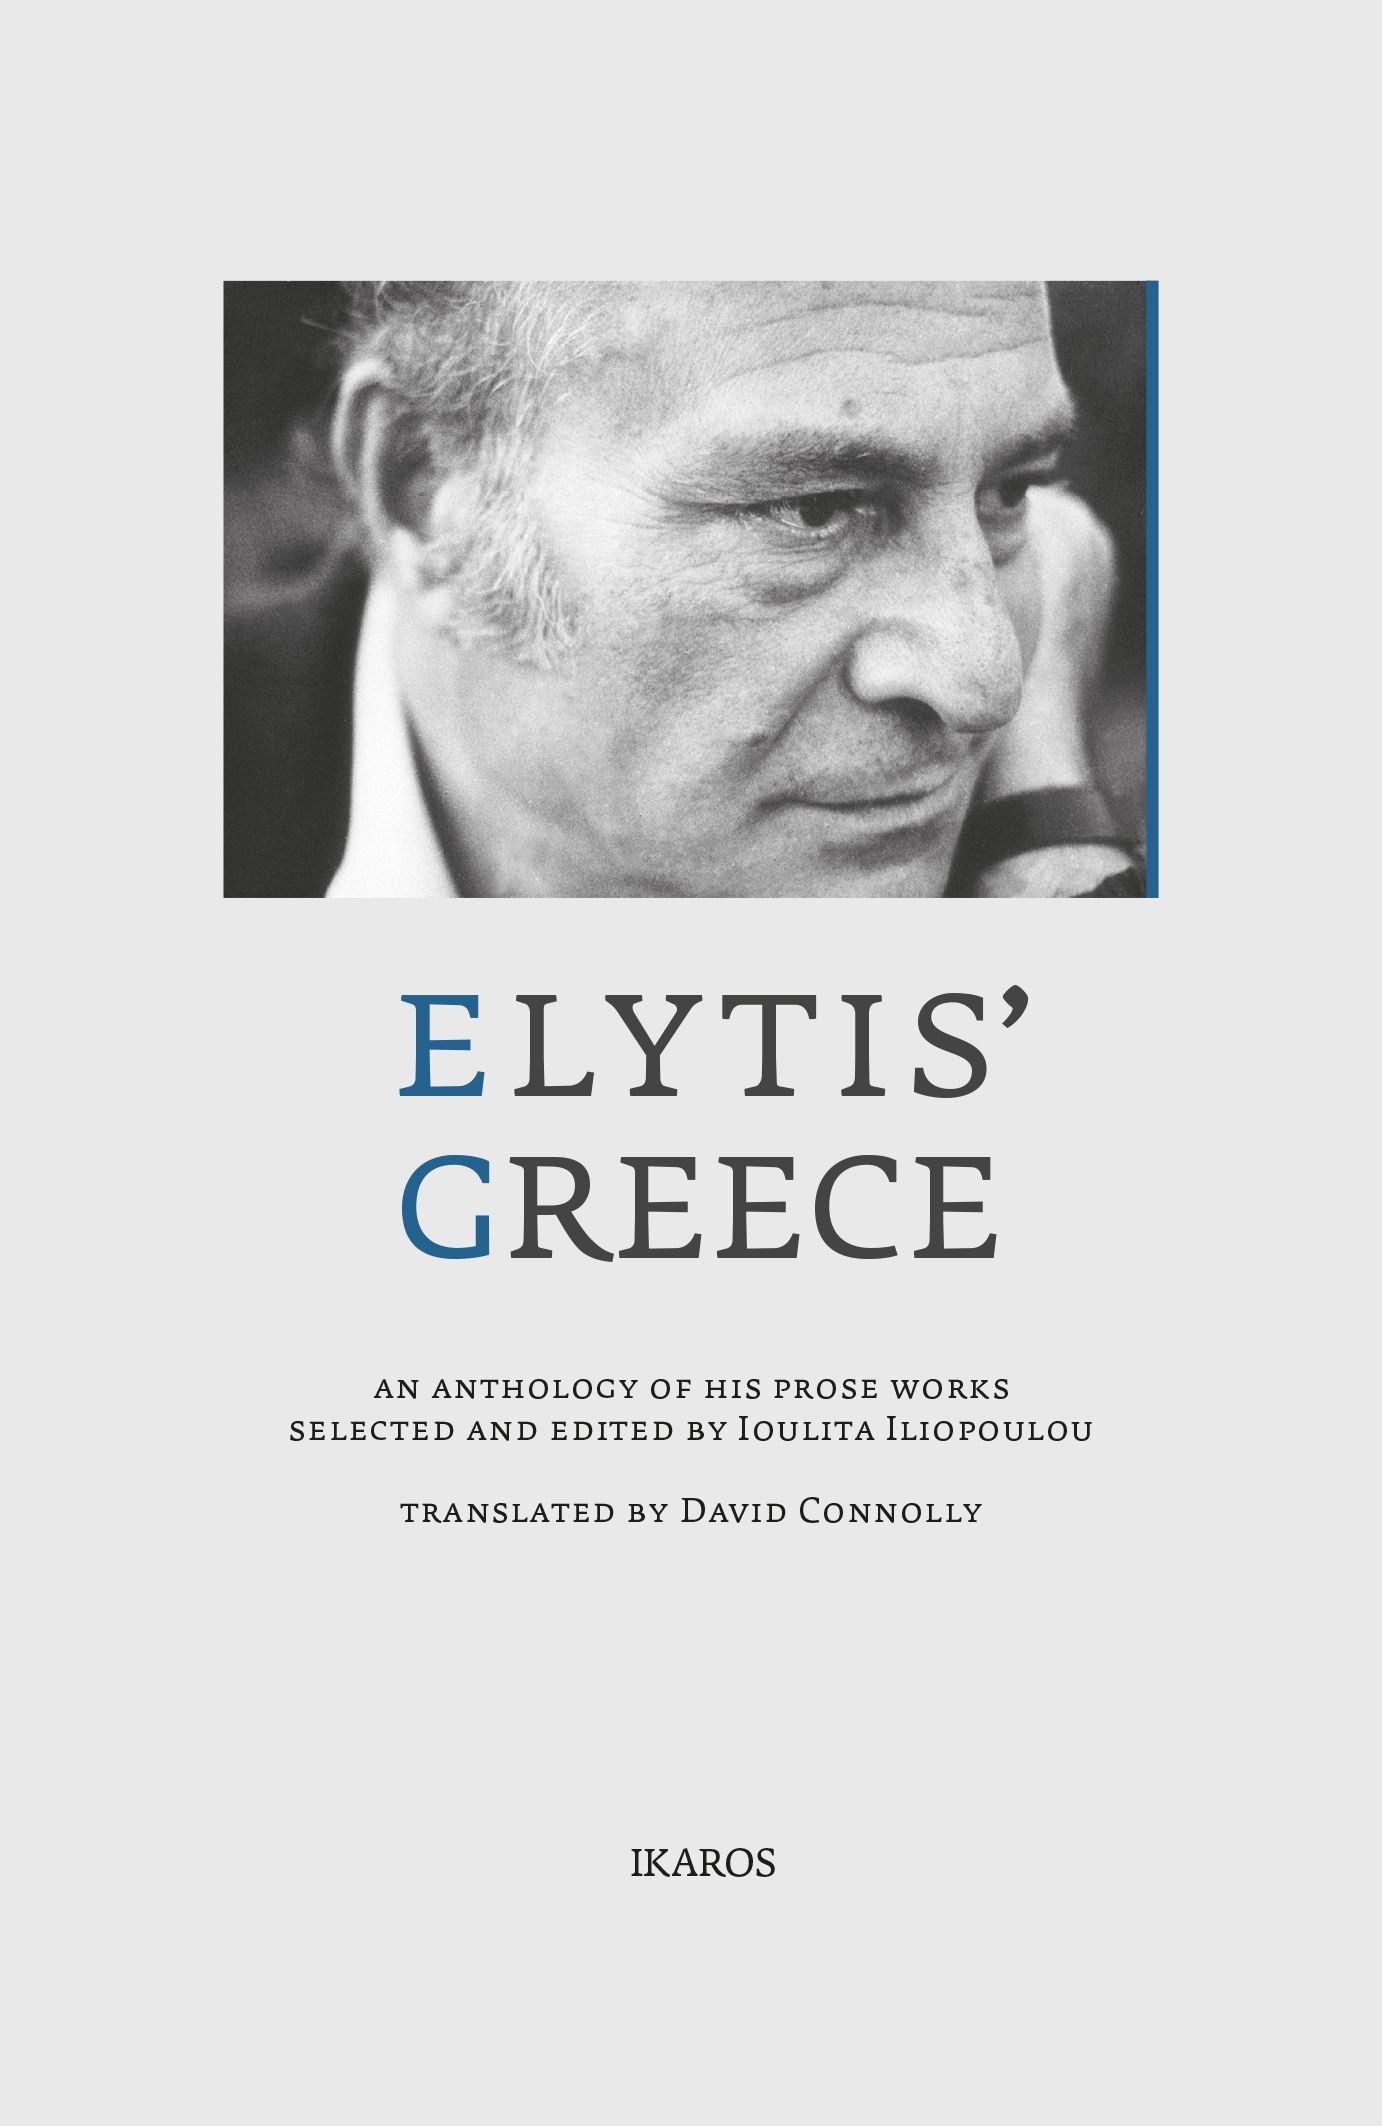 2021, Ιουλίτα  Ηλιοπούλου (), Elytis’ Greece, An anthology of his prose works, Ελύτης, Οδυσσέας, 1911-1996, Ίκαρος